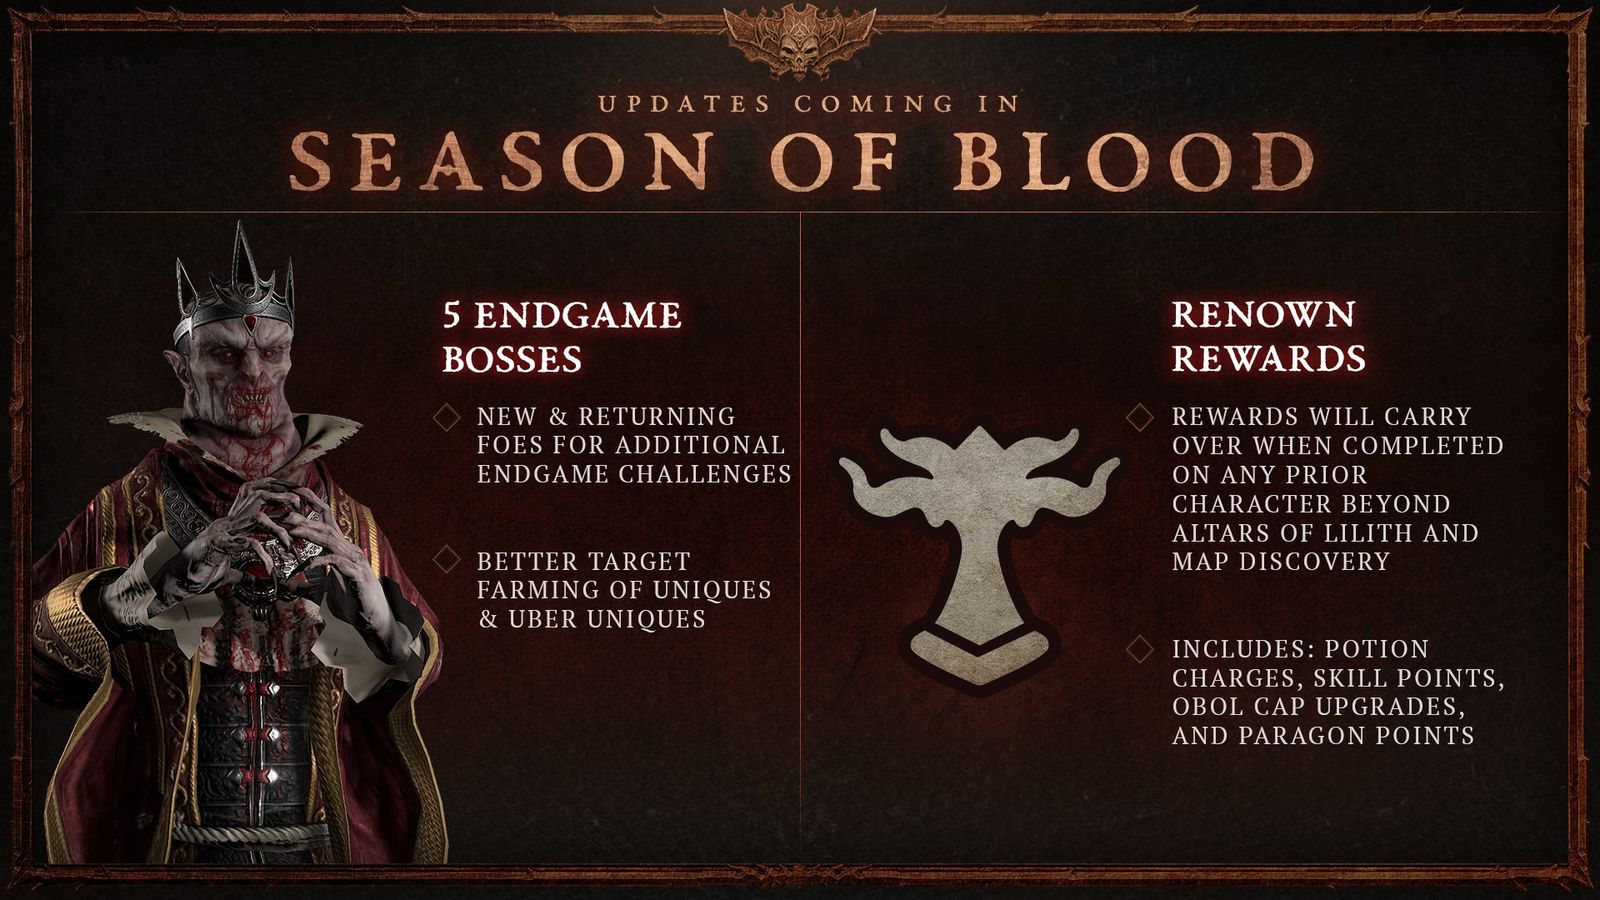 New Endgame bosses coming in Diablo 4 Season 2 as well as renown rewards